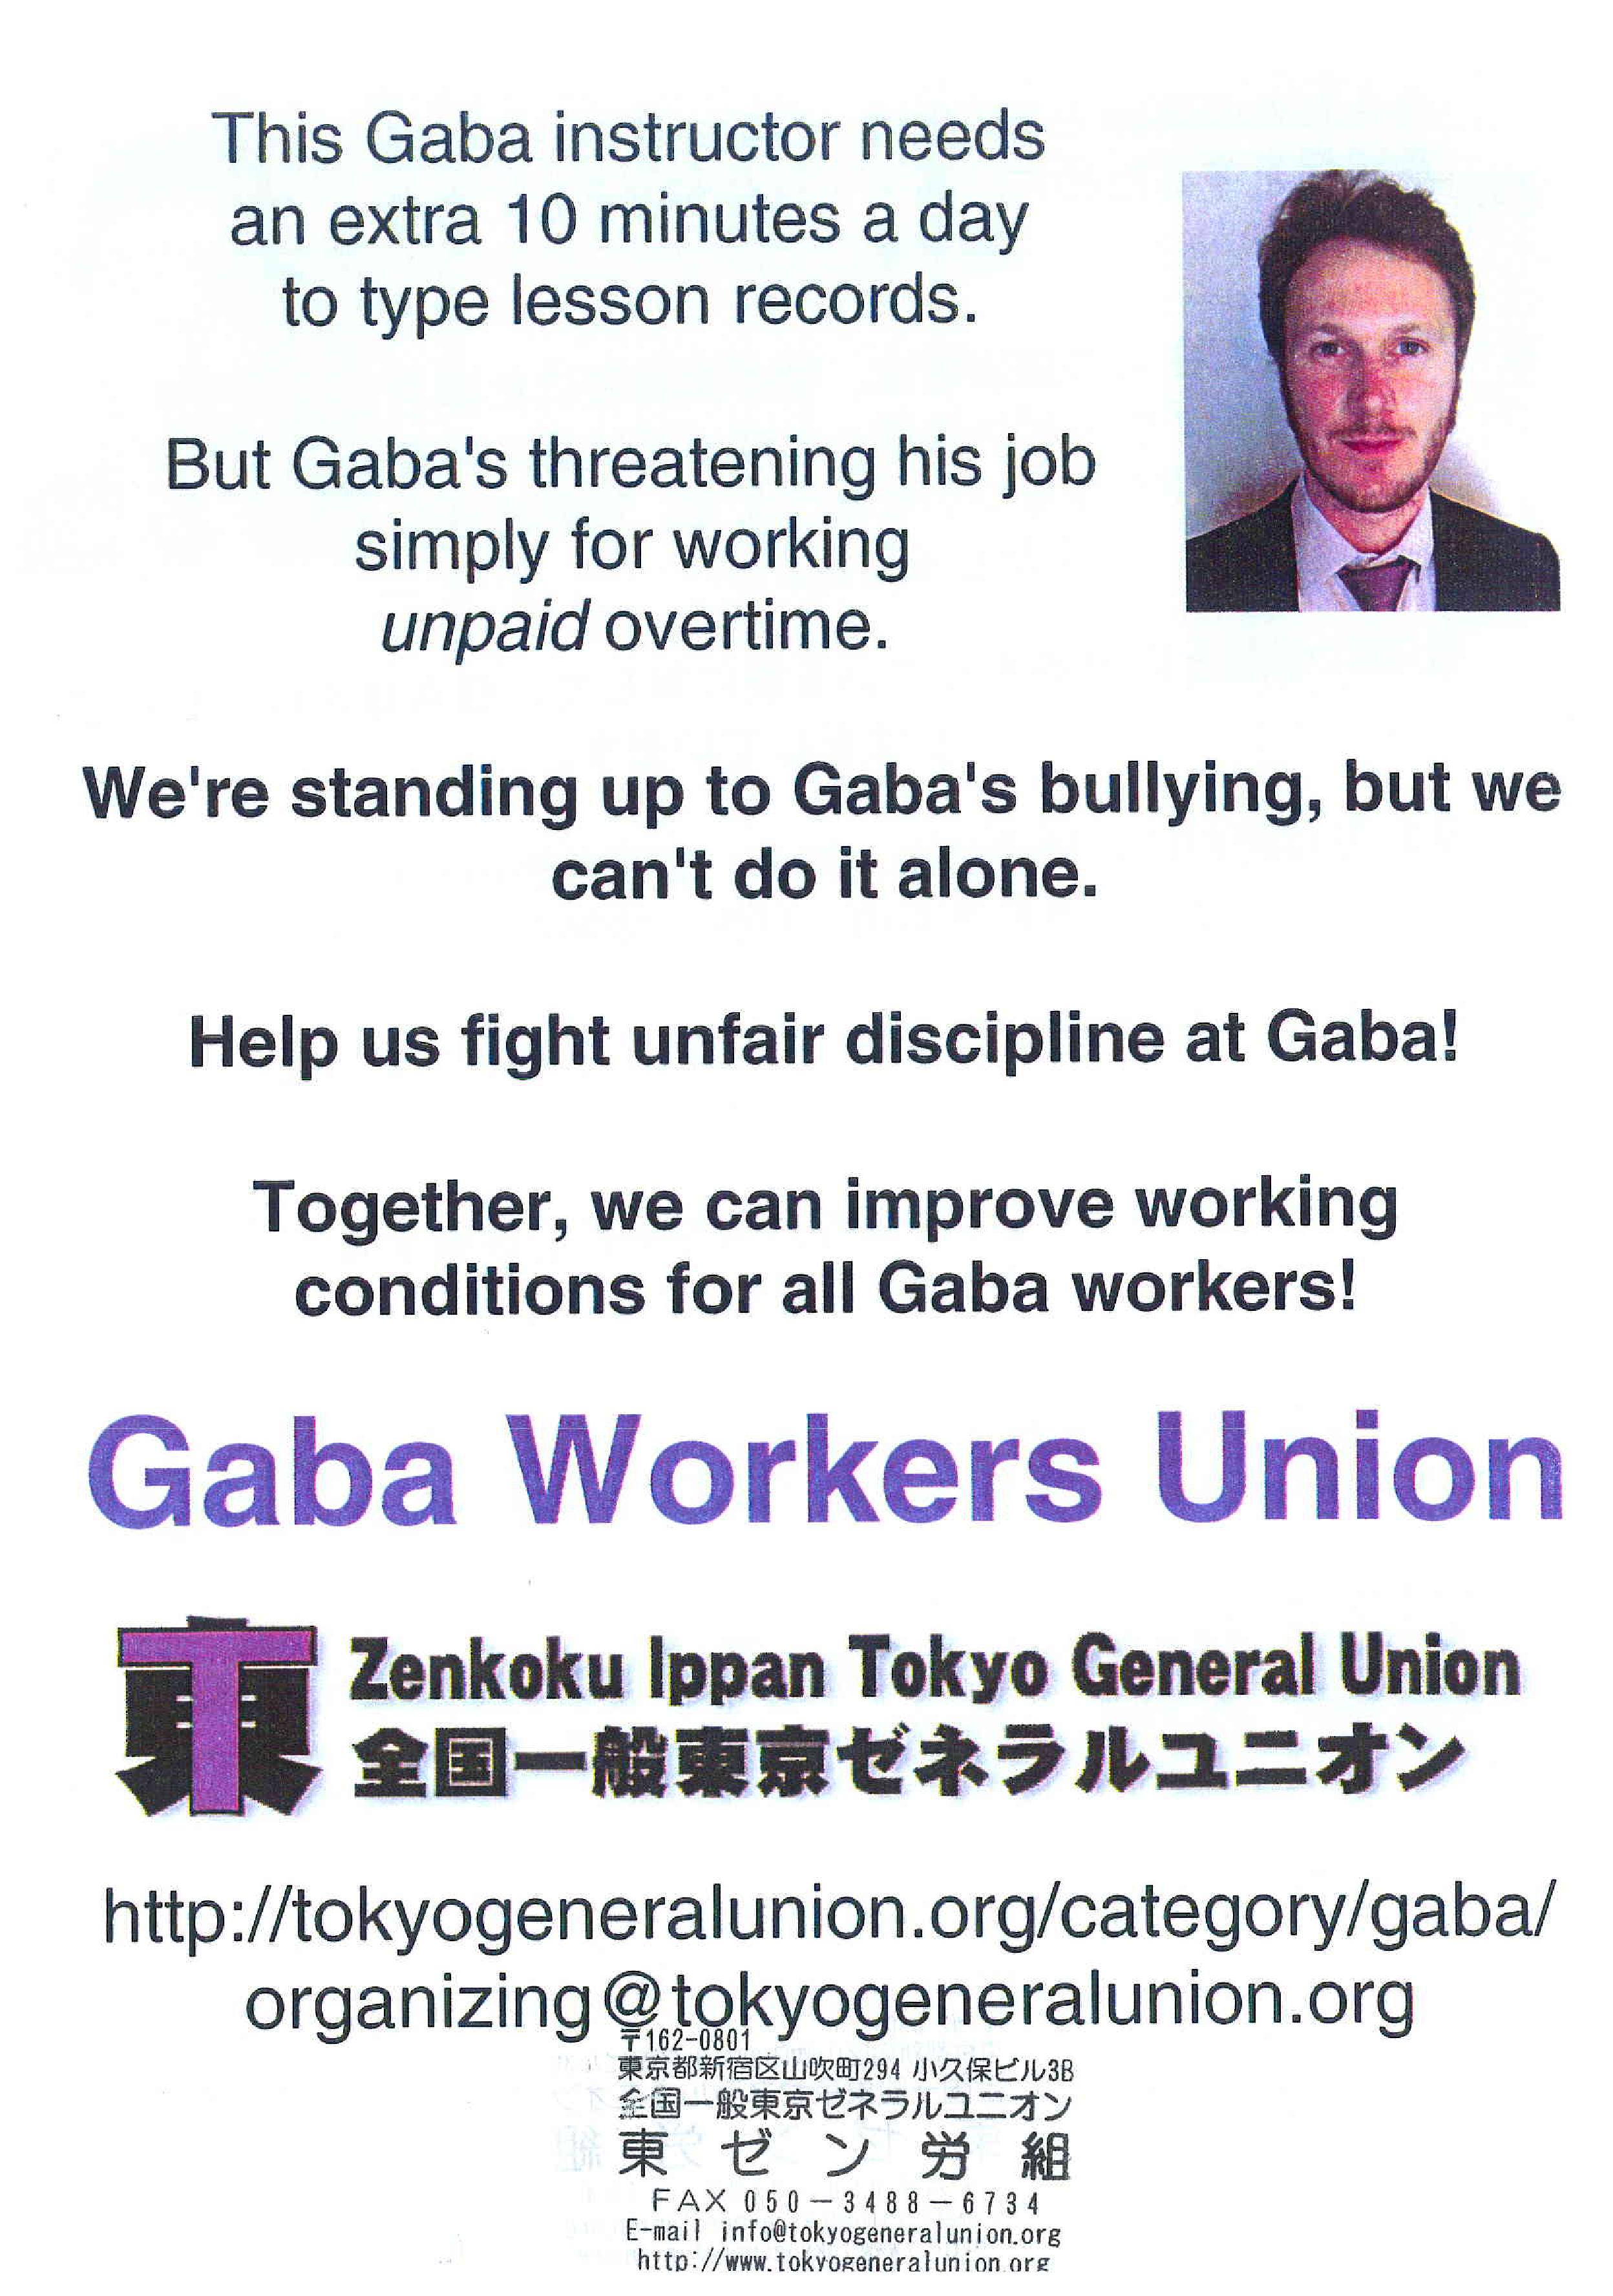 GABA Workers Union